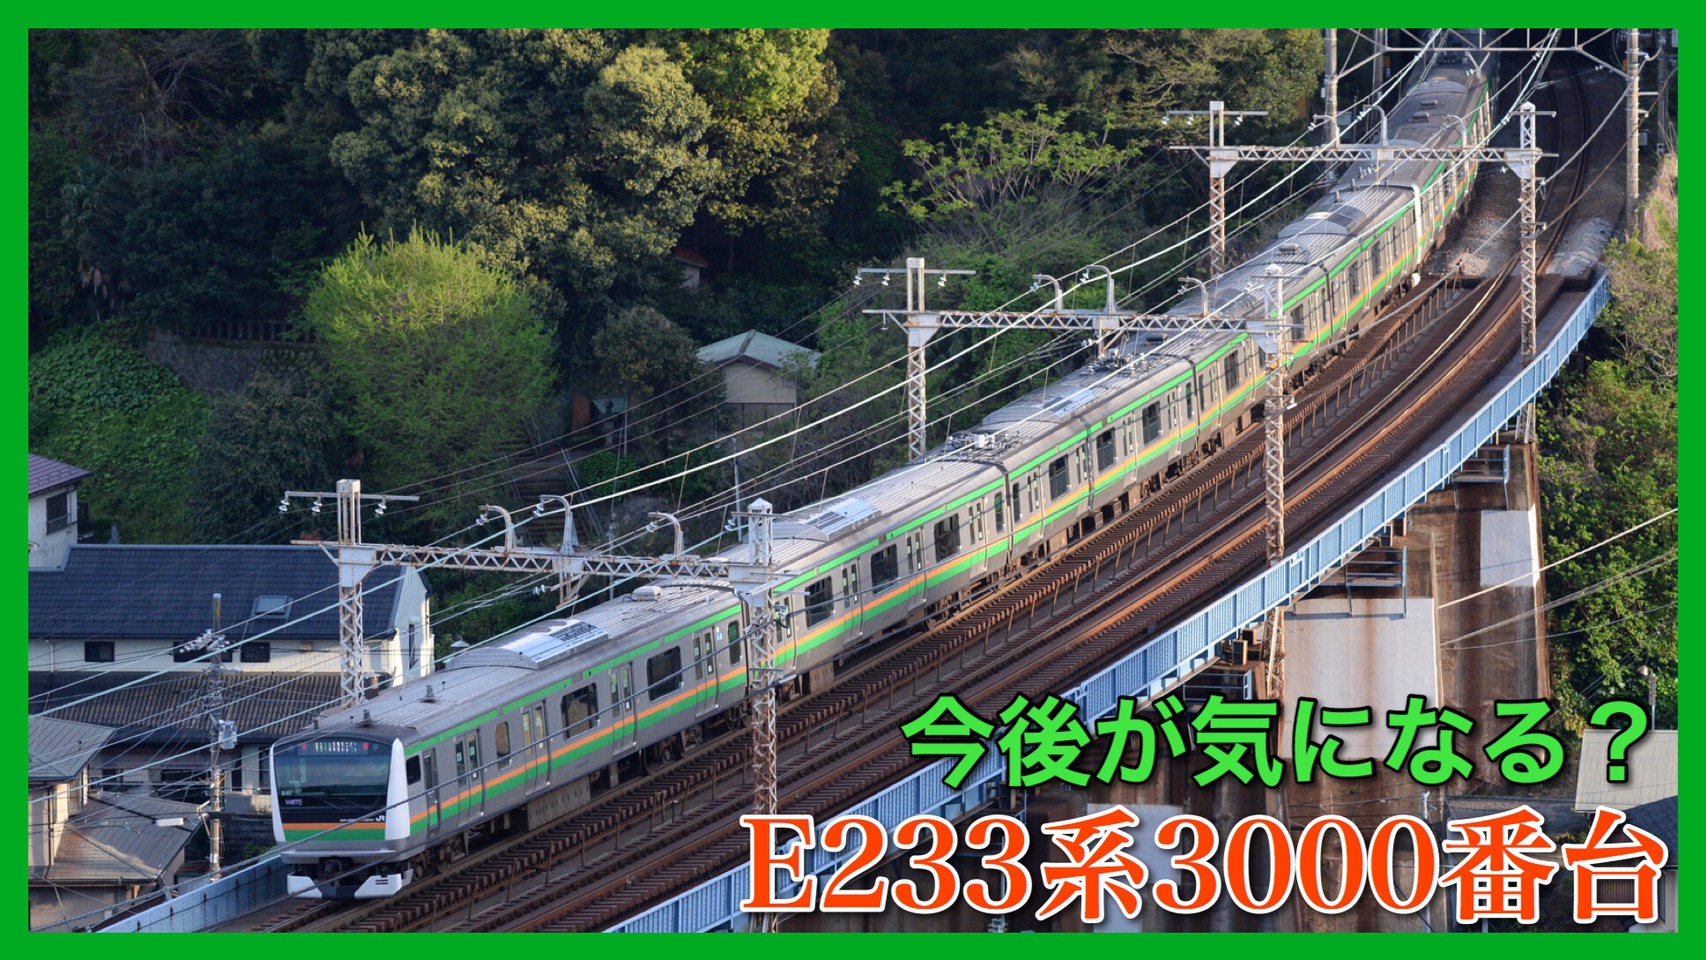 東海道 高崎 宇都宮 E233系3000番台 少数派の魅力 今後に注目 鉄道ファンの待合室